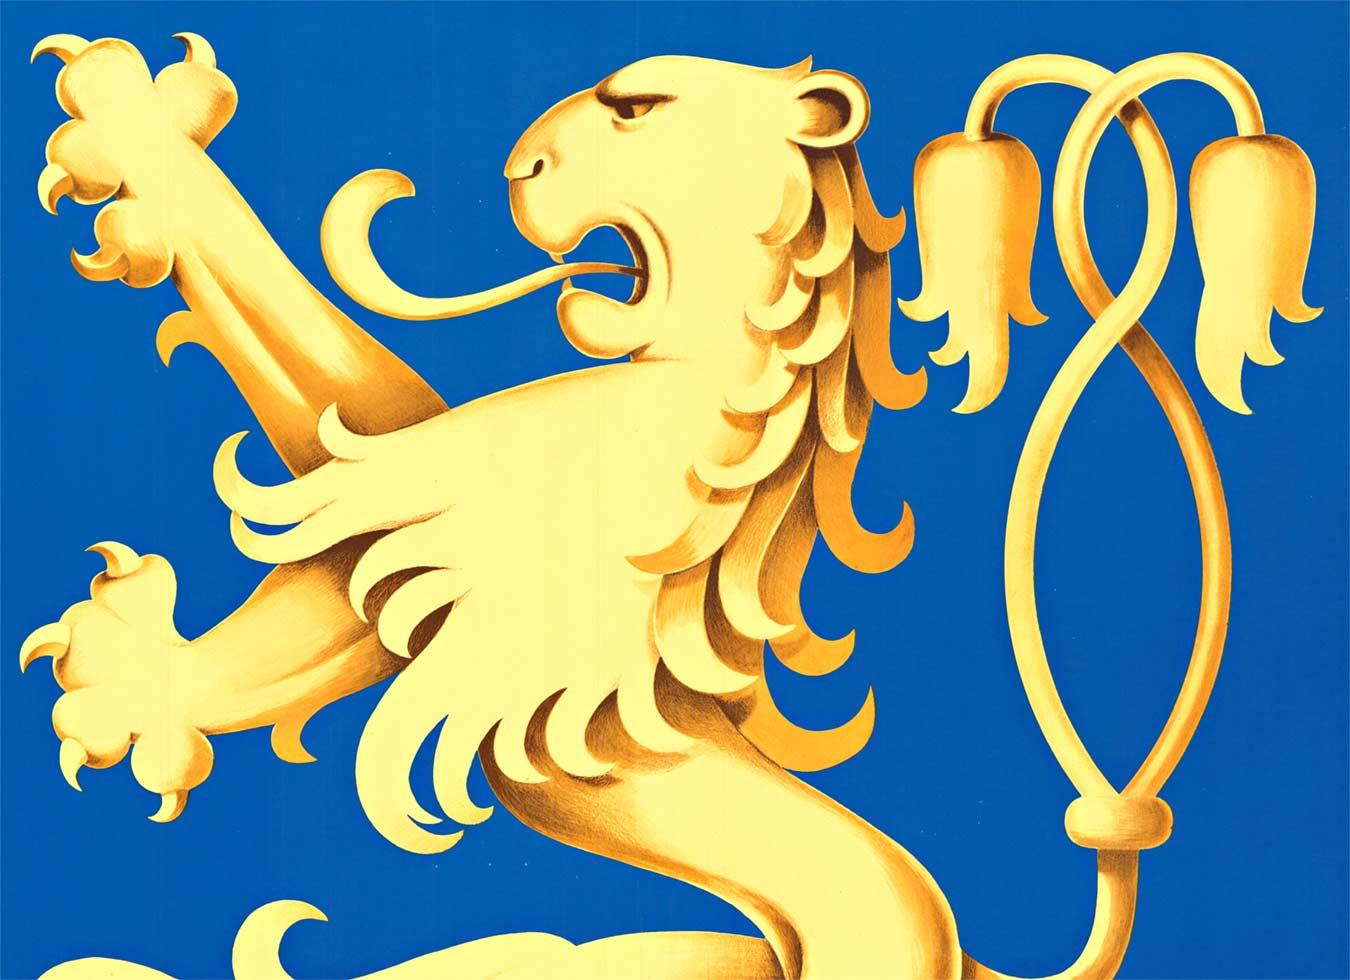 Affiche originale de la Lowenbrau Munchen avec le lion emblématique - Lin de conservation, prêt à encadrer, excellent état.  (Löwenbräu München)

L'affiche originale du Lowenbrau Munchen Vintage avec son lion emblématique est un véritable objet de